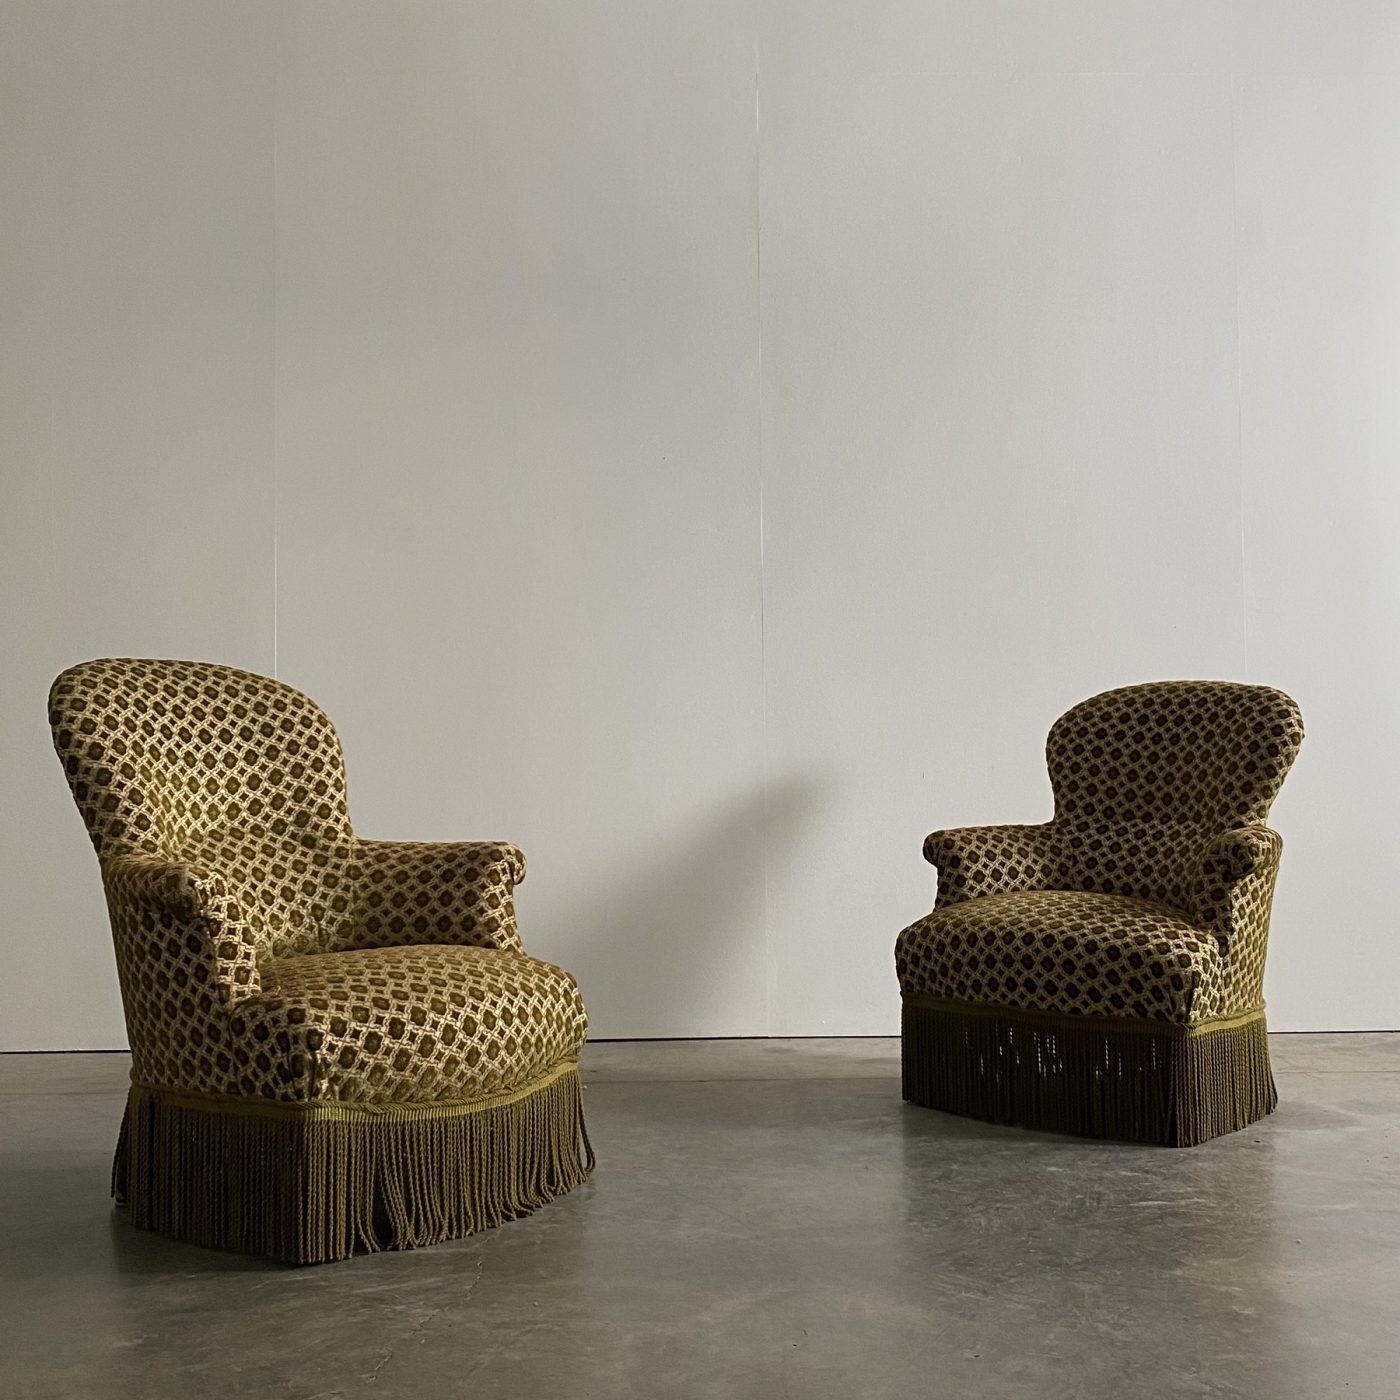 objet-vagabond-napoleon-armchairs0001